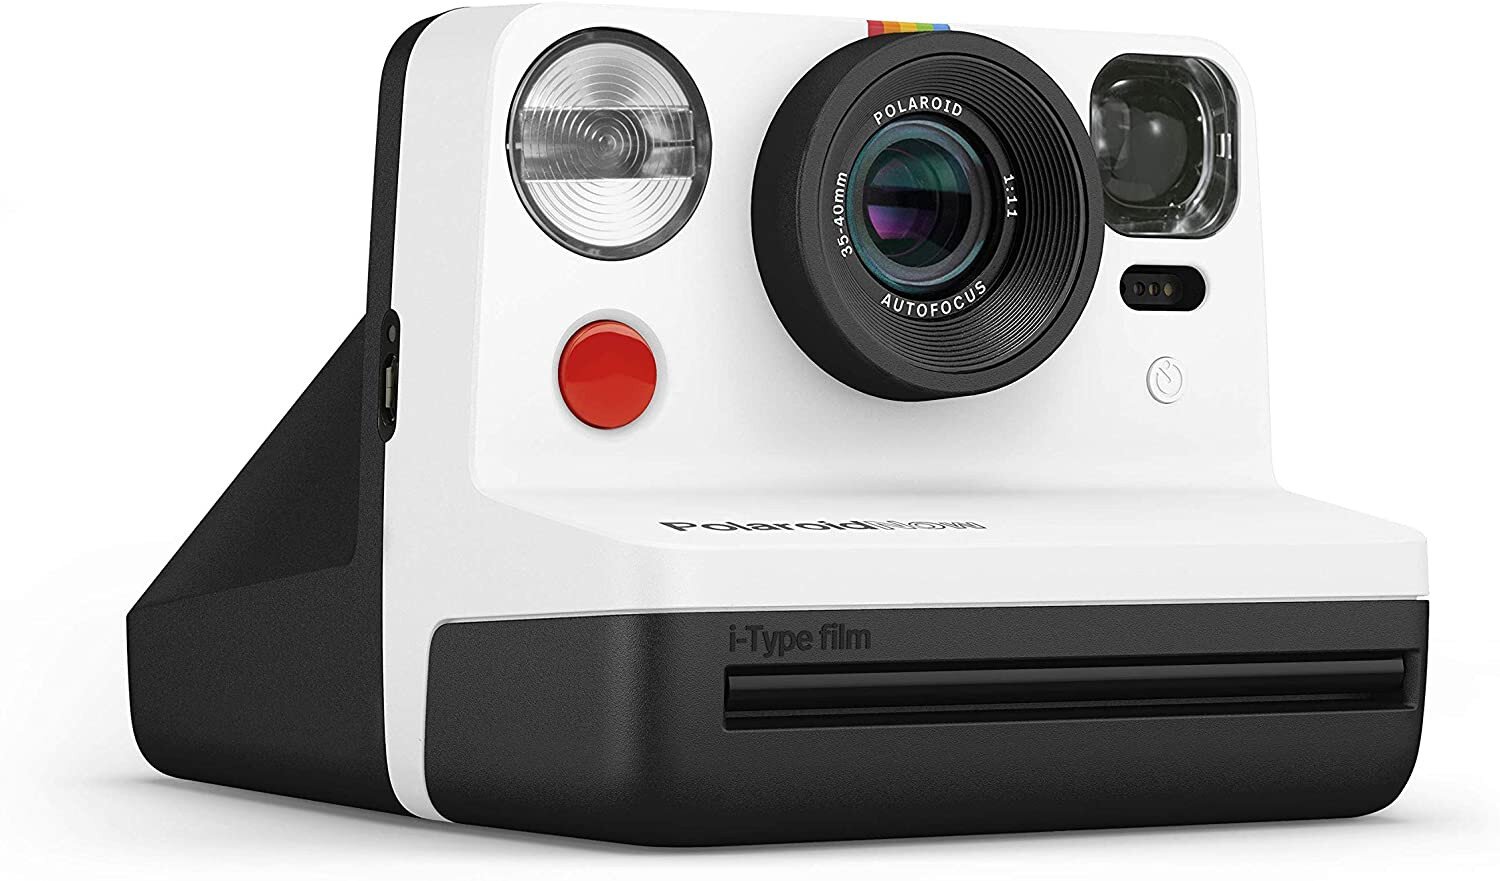 Polaroid Originals Now i-Type Instant Film Camera, Black 9028